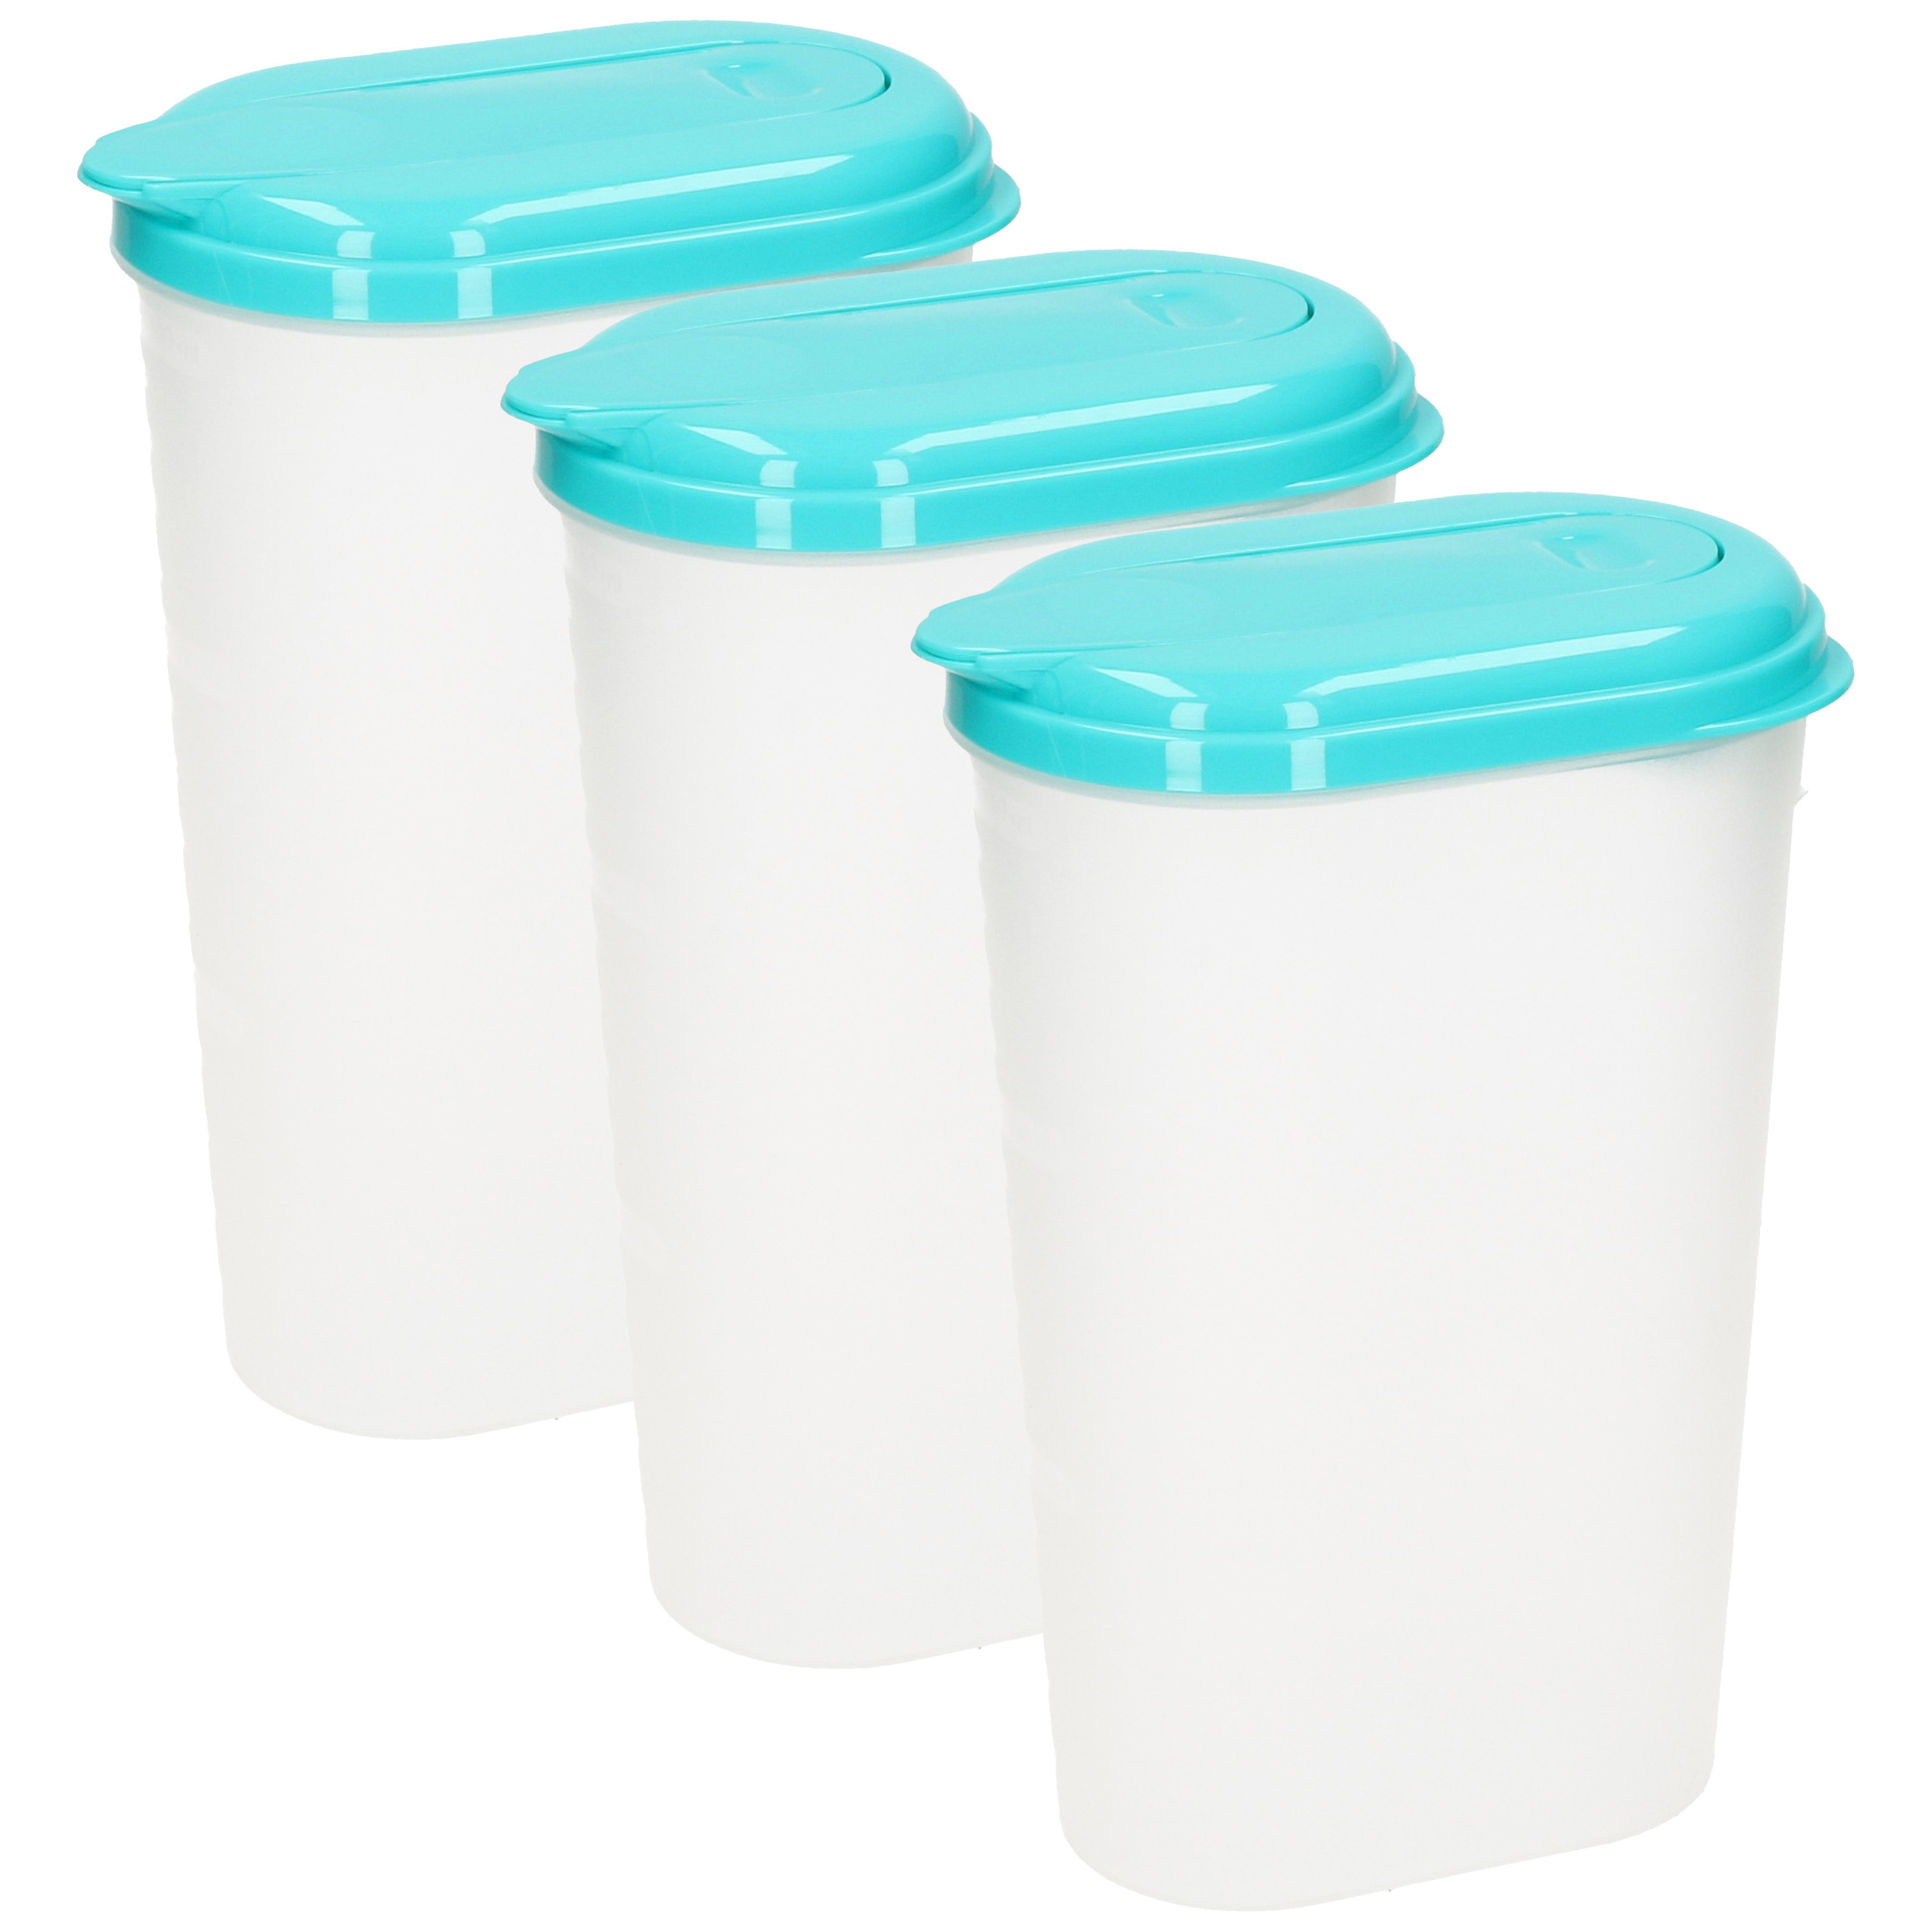 PlasticForte Waterkan/sapkan - 3x - transparant/aqua groen - met deksel - 1.6 liter - kunststof -